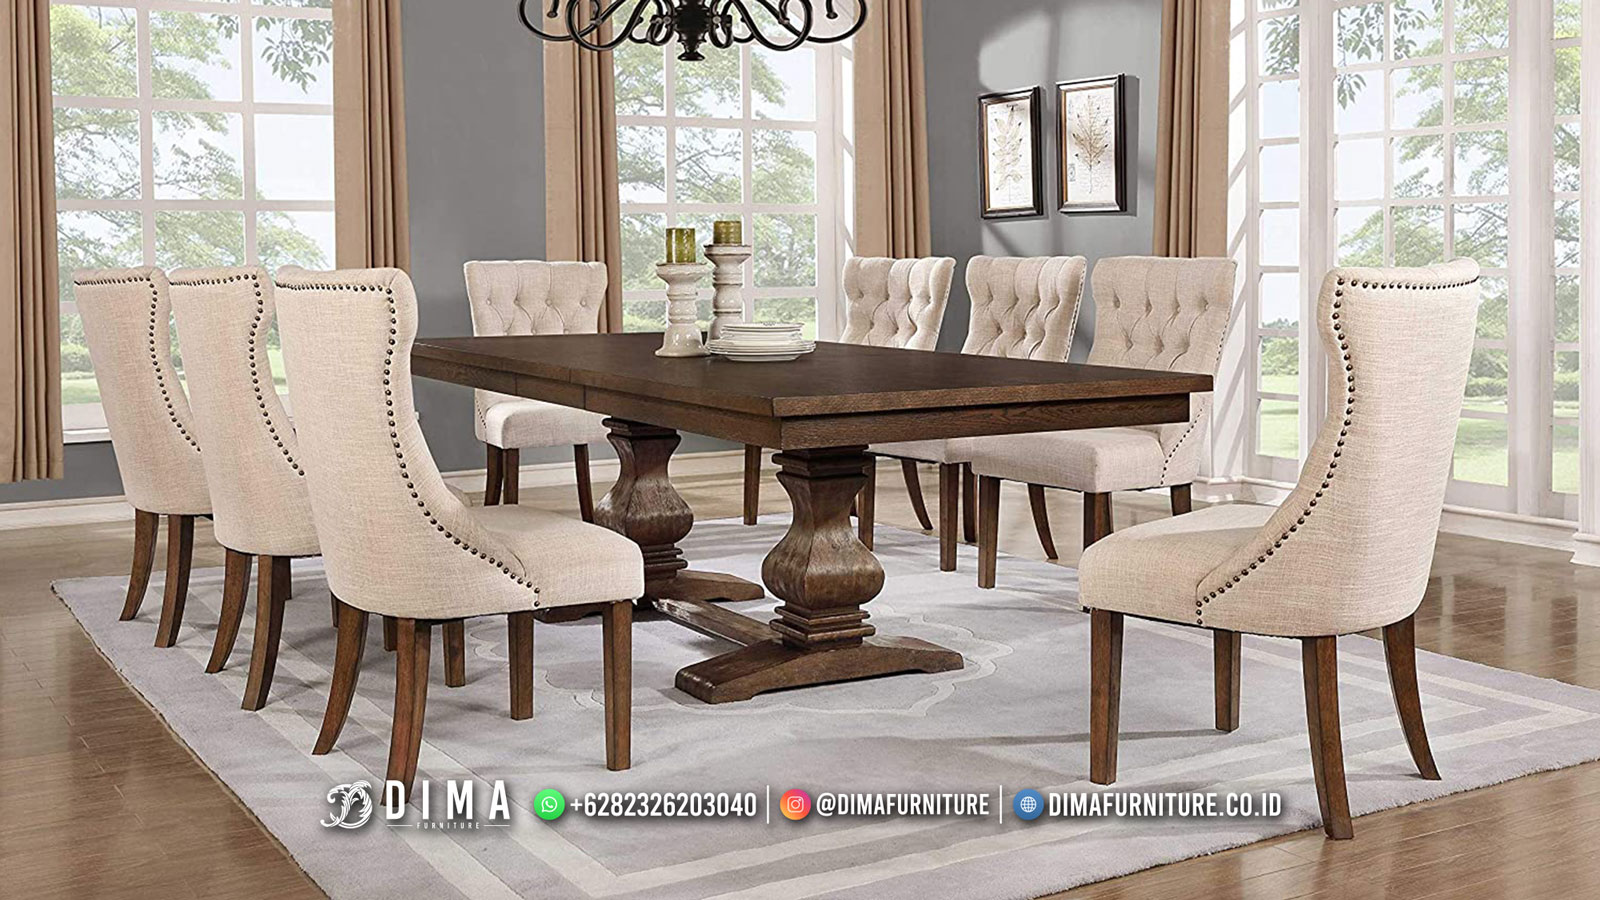 Best Quality Meja Makan Minimalis Terbaru Furniture Jepara BM583